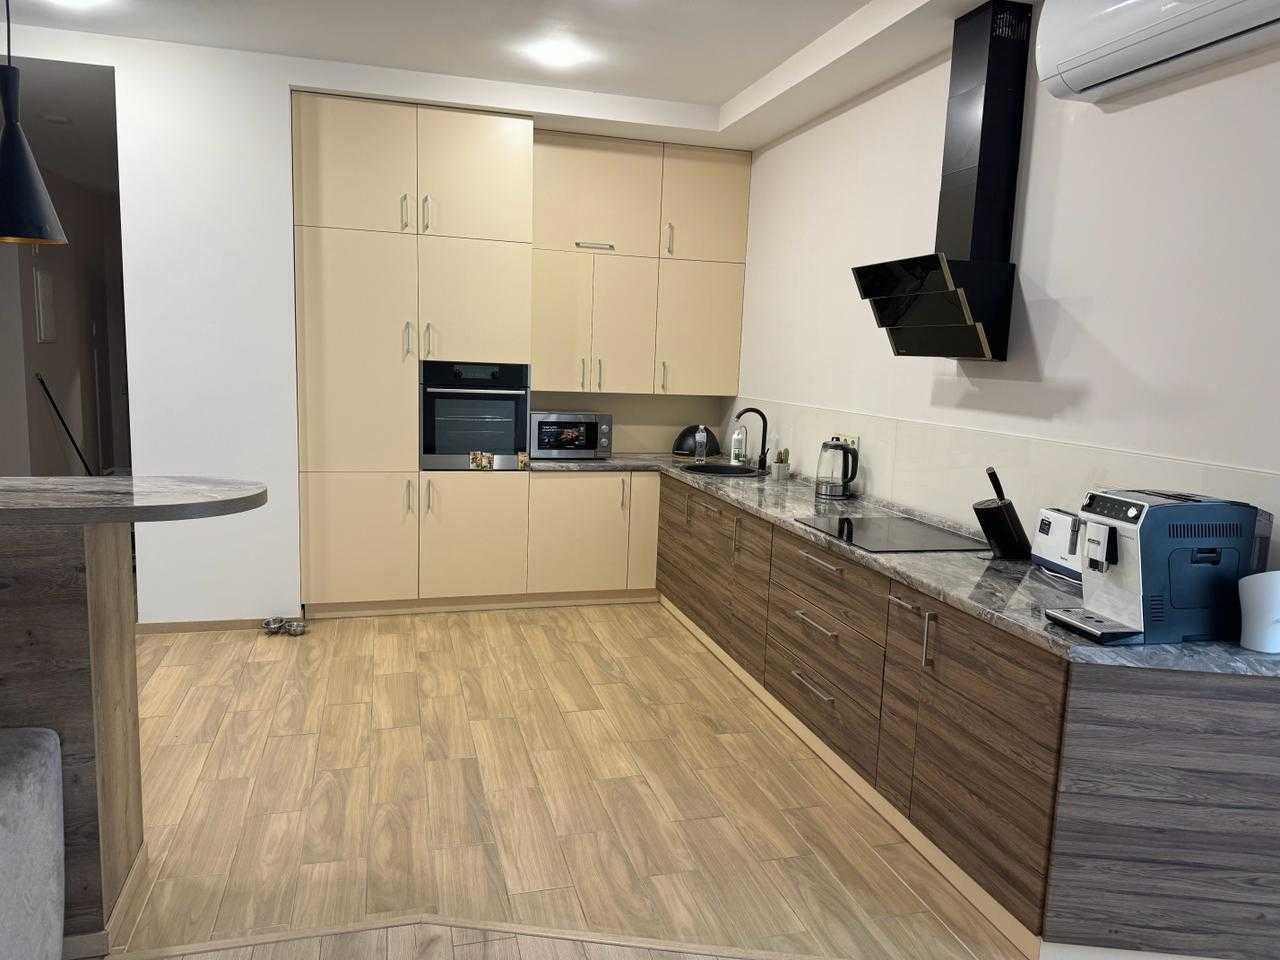 ЖК Панорама 3 к., кухня-вітальня, 110 м². Продаж від власника